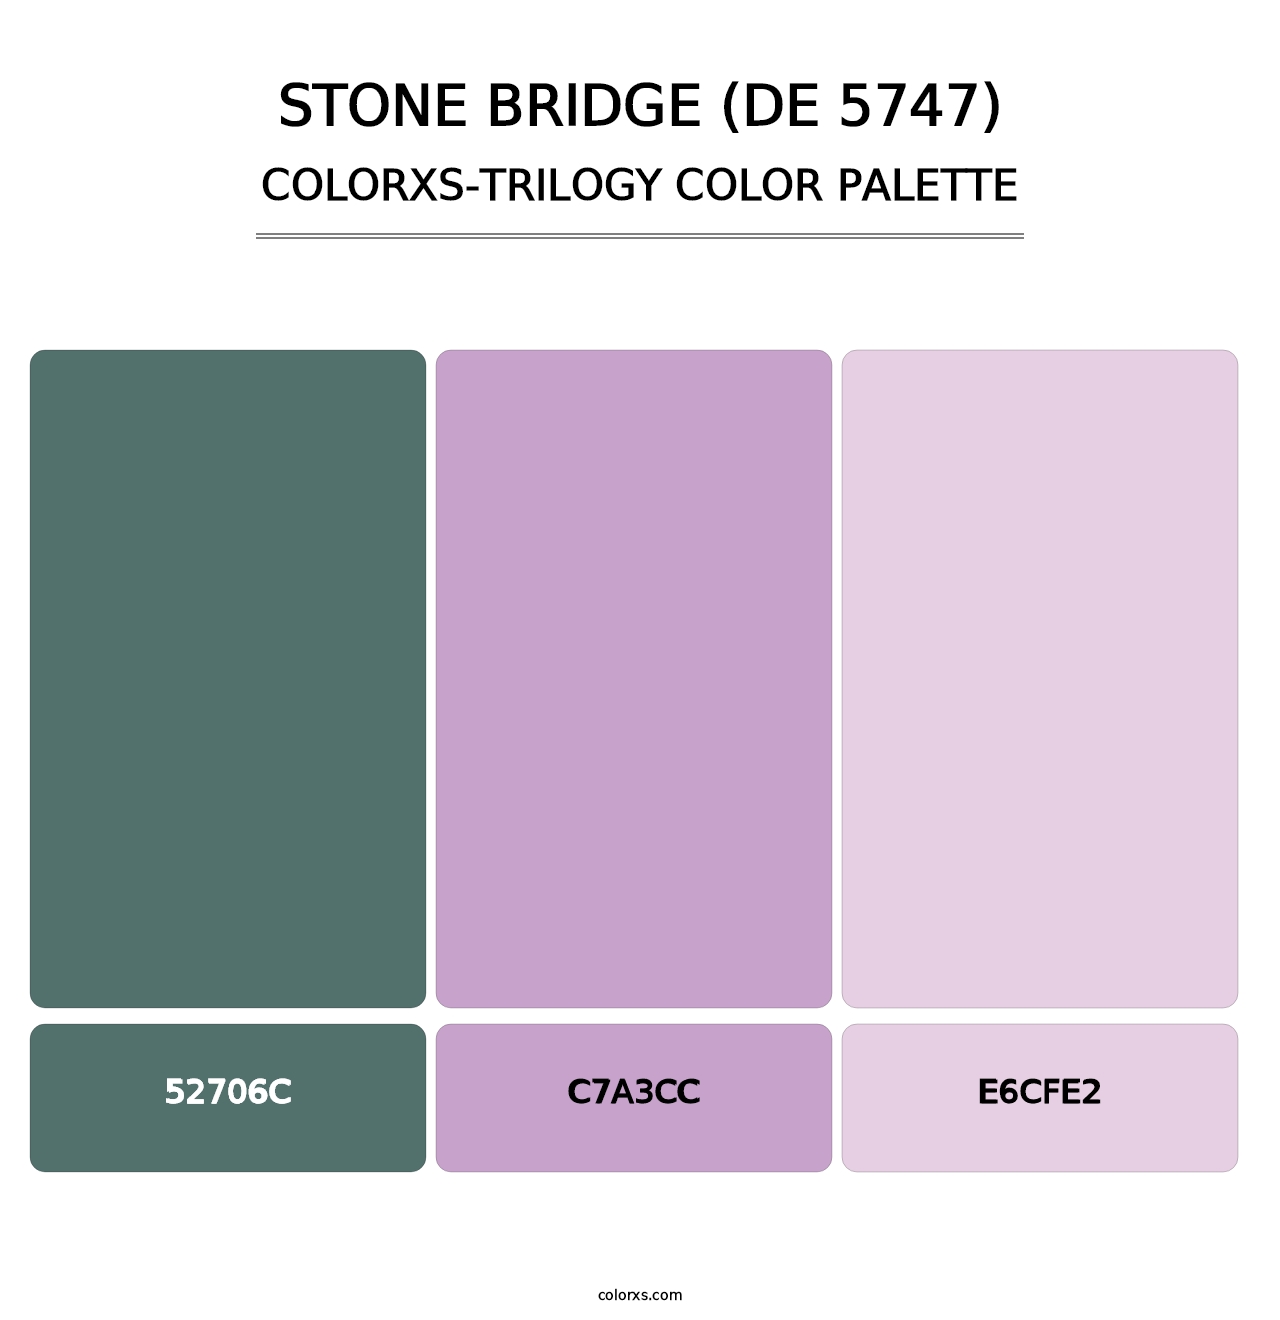 Stone Bridge (DE 5747) - Colorxs Trilogy Palette